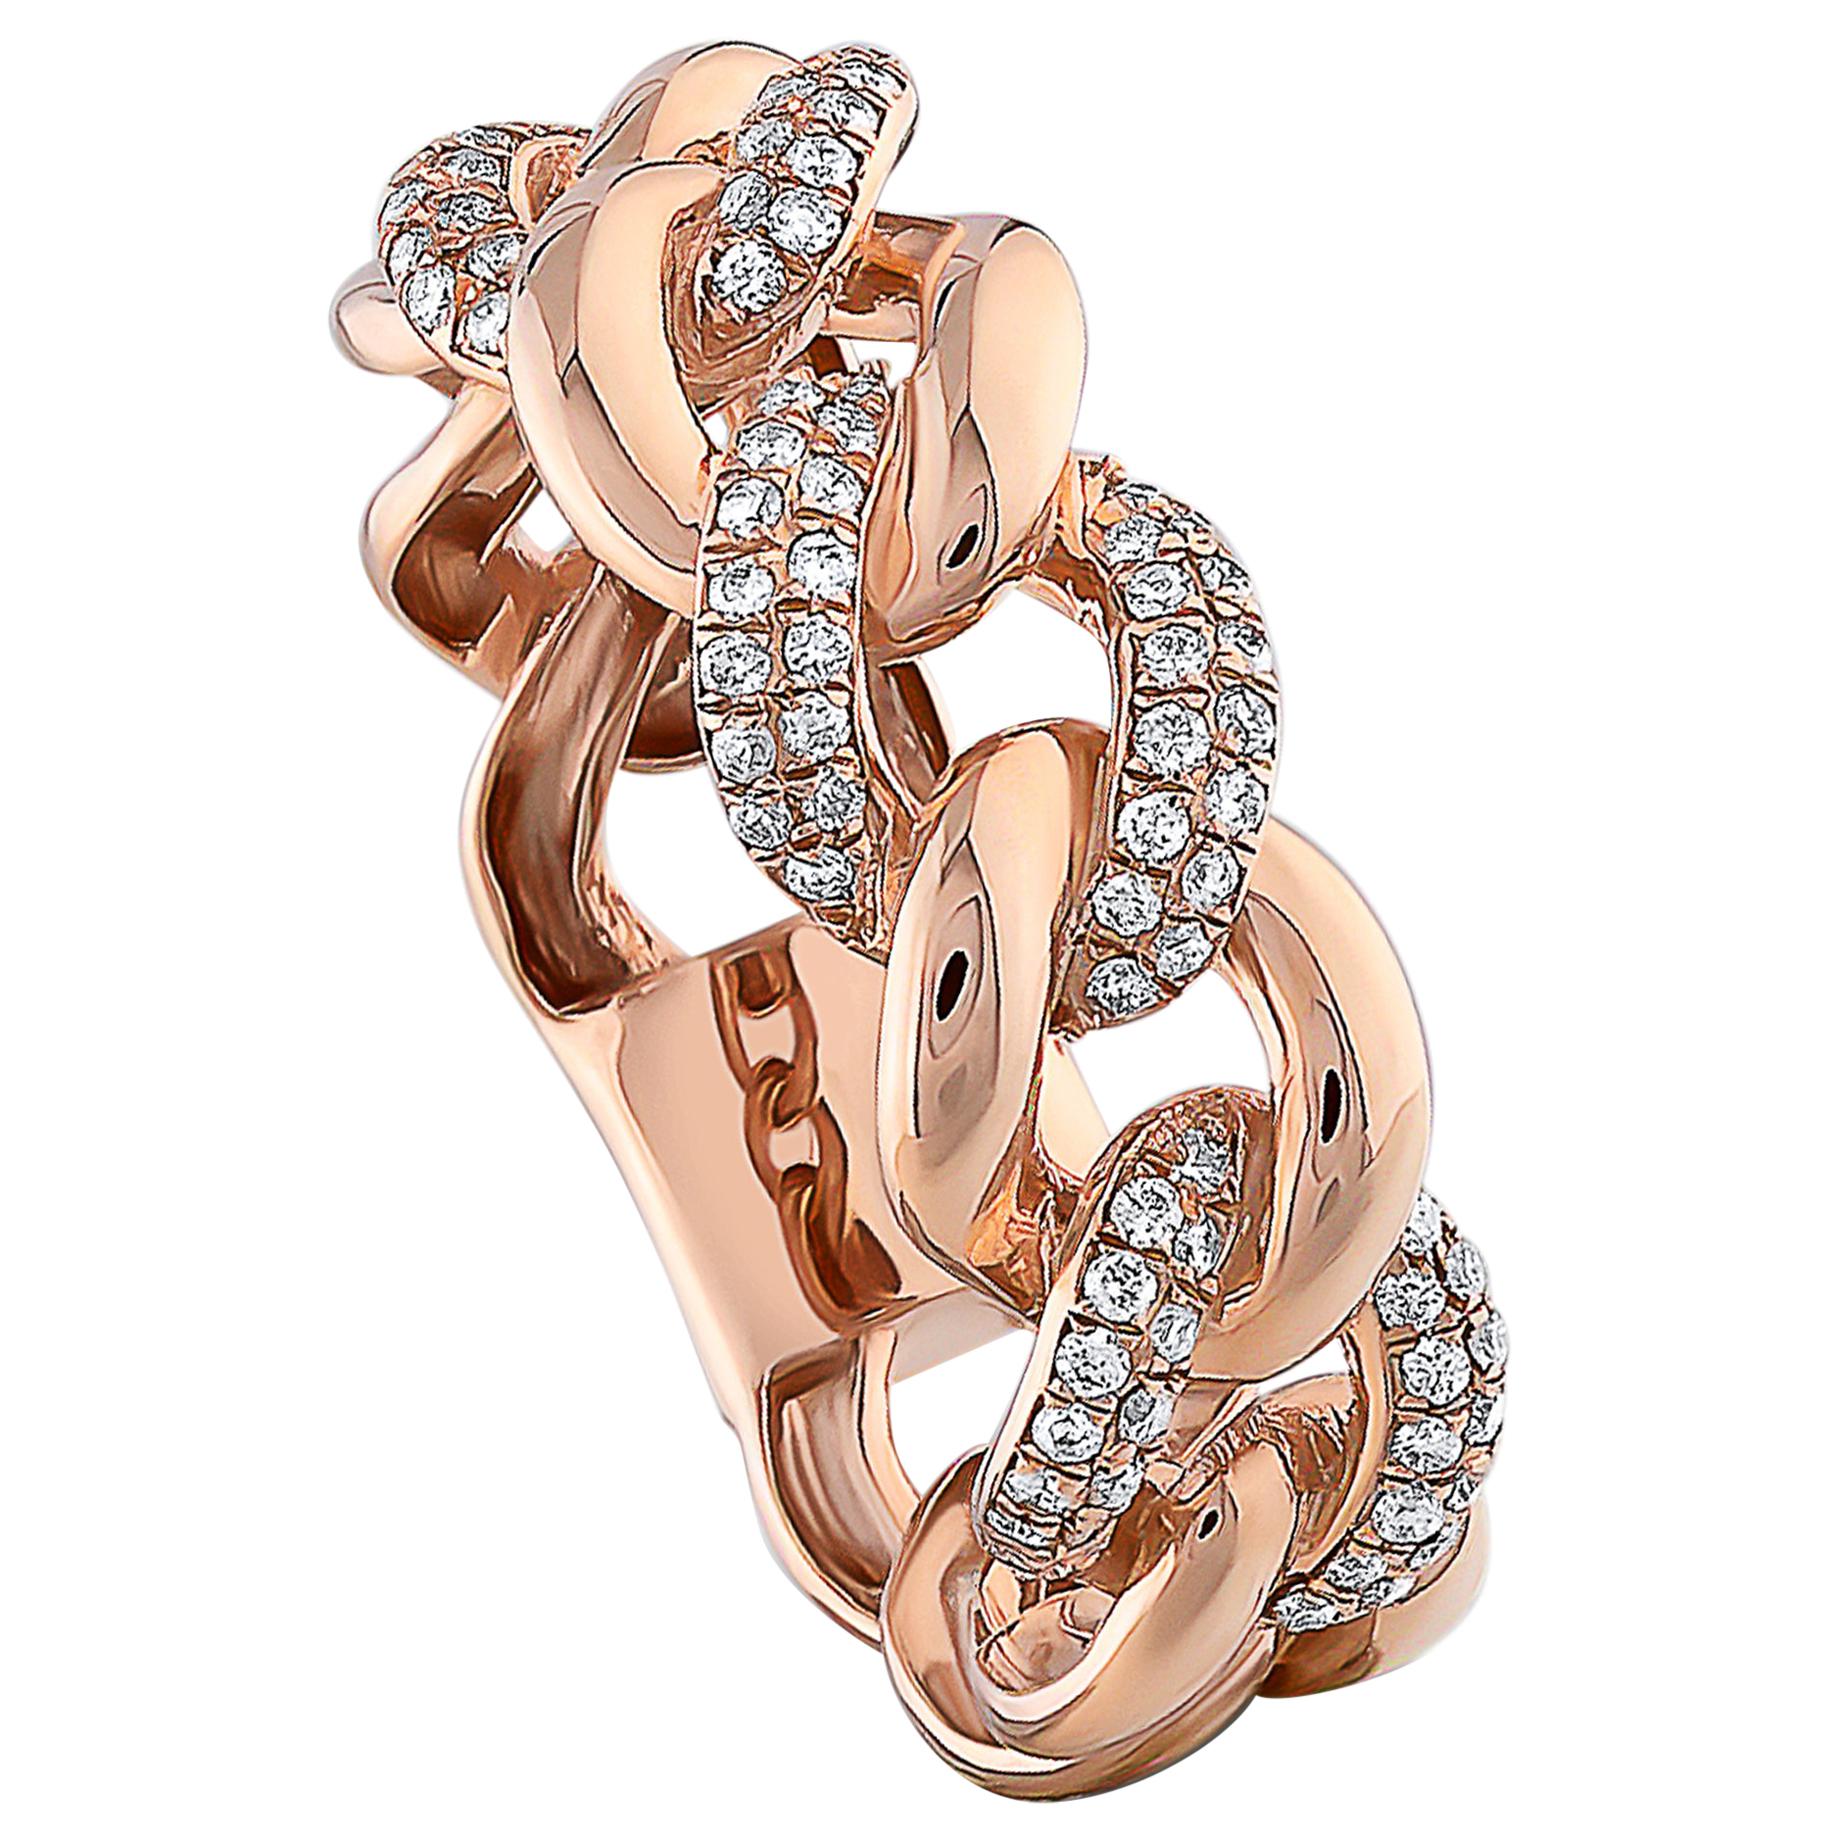 0.30 Carat Diamond Cuban Ring 18K Rose Gold Fashion Ring Round Cut Diamond Ring For Sale